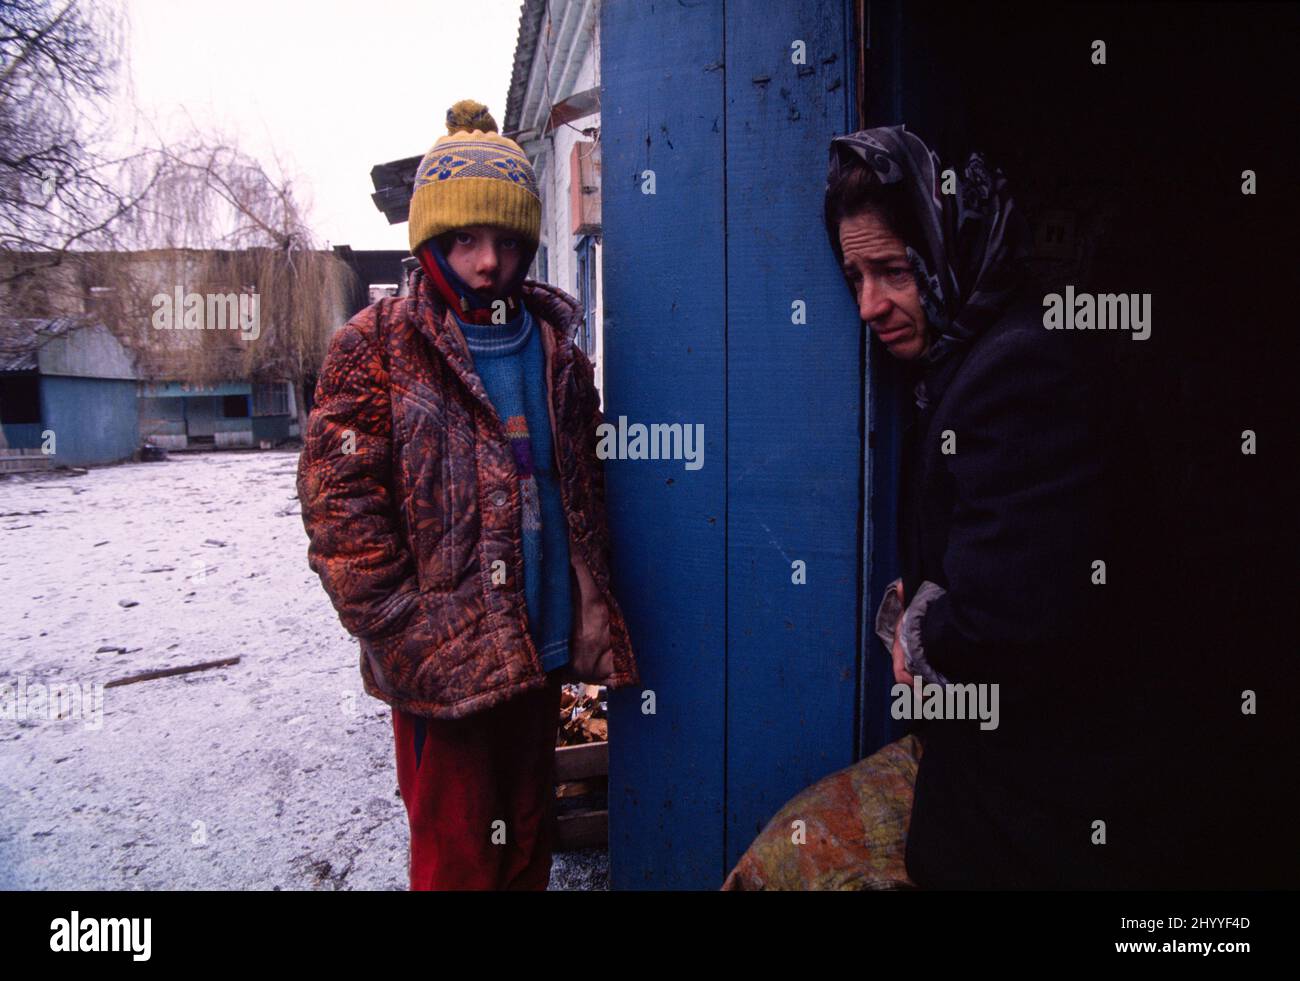 Primera Guerra de Independencia de Chechenia de Rusia (1994-1995). Madre chechena e hija de ocho años a la puerta del sótano de una escuela bombardeada al sur de Grozny, la capital de la República chechena. 28 de diciembre de 1994. Foto de stock